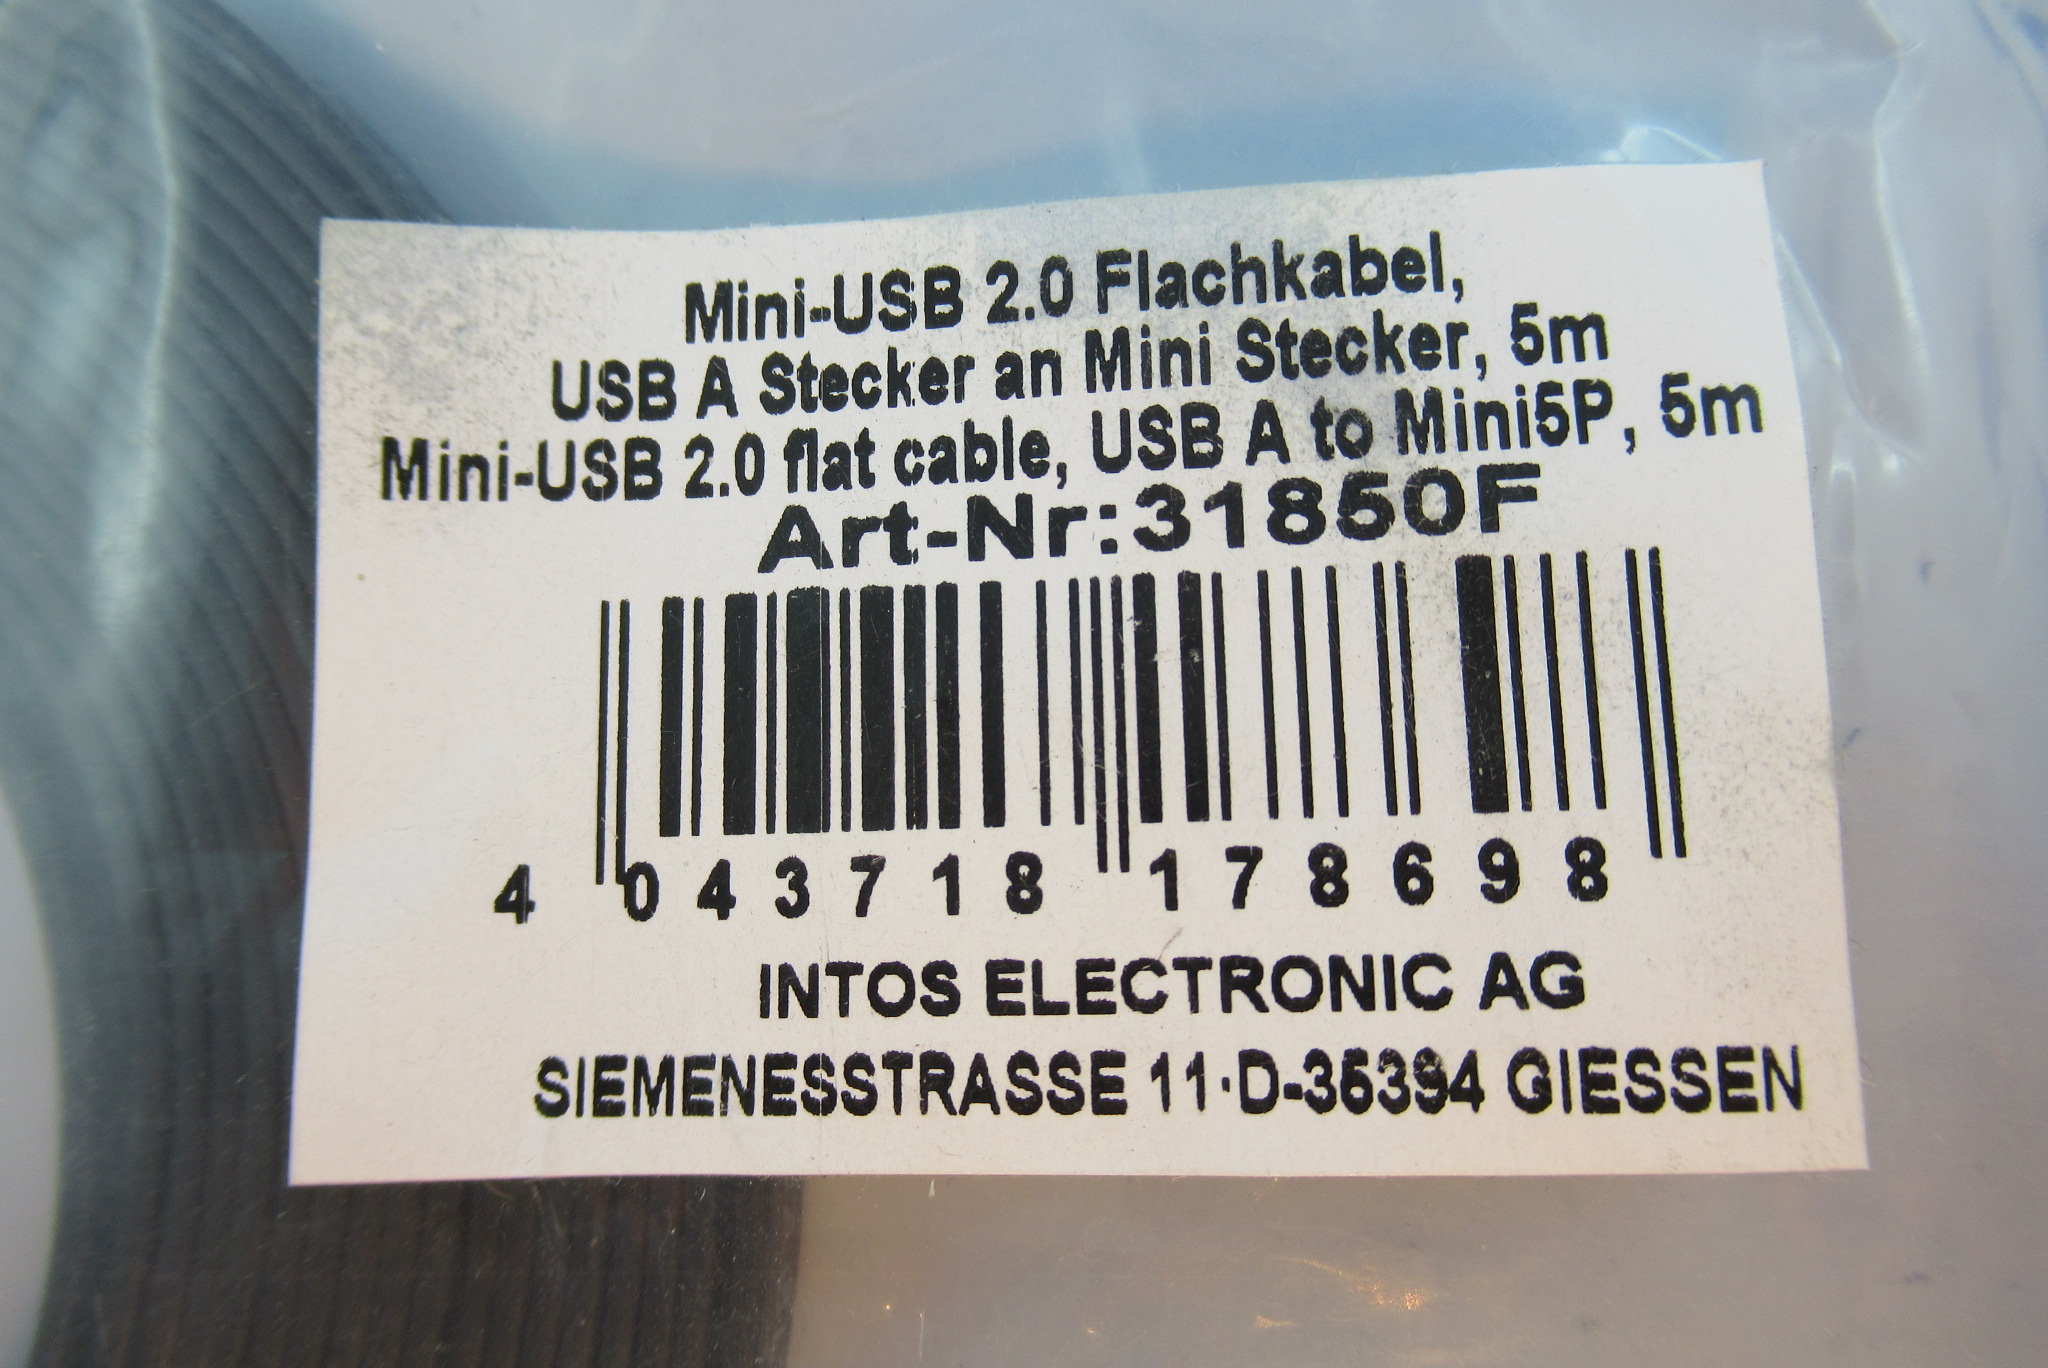 USB 2.0 Flachkabel USB A St / Mini-B St 5m INTOS 31850F